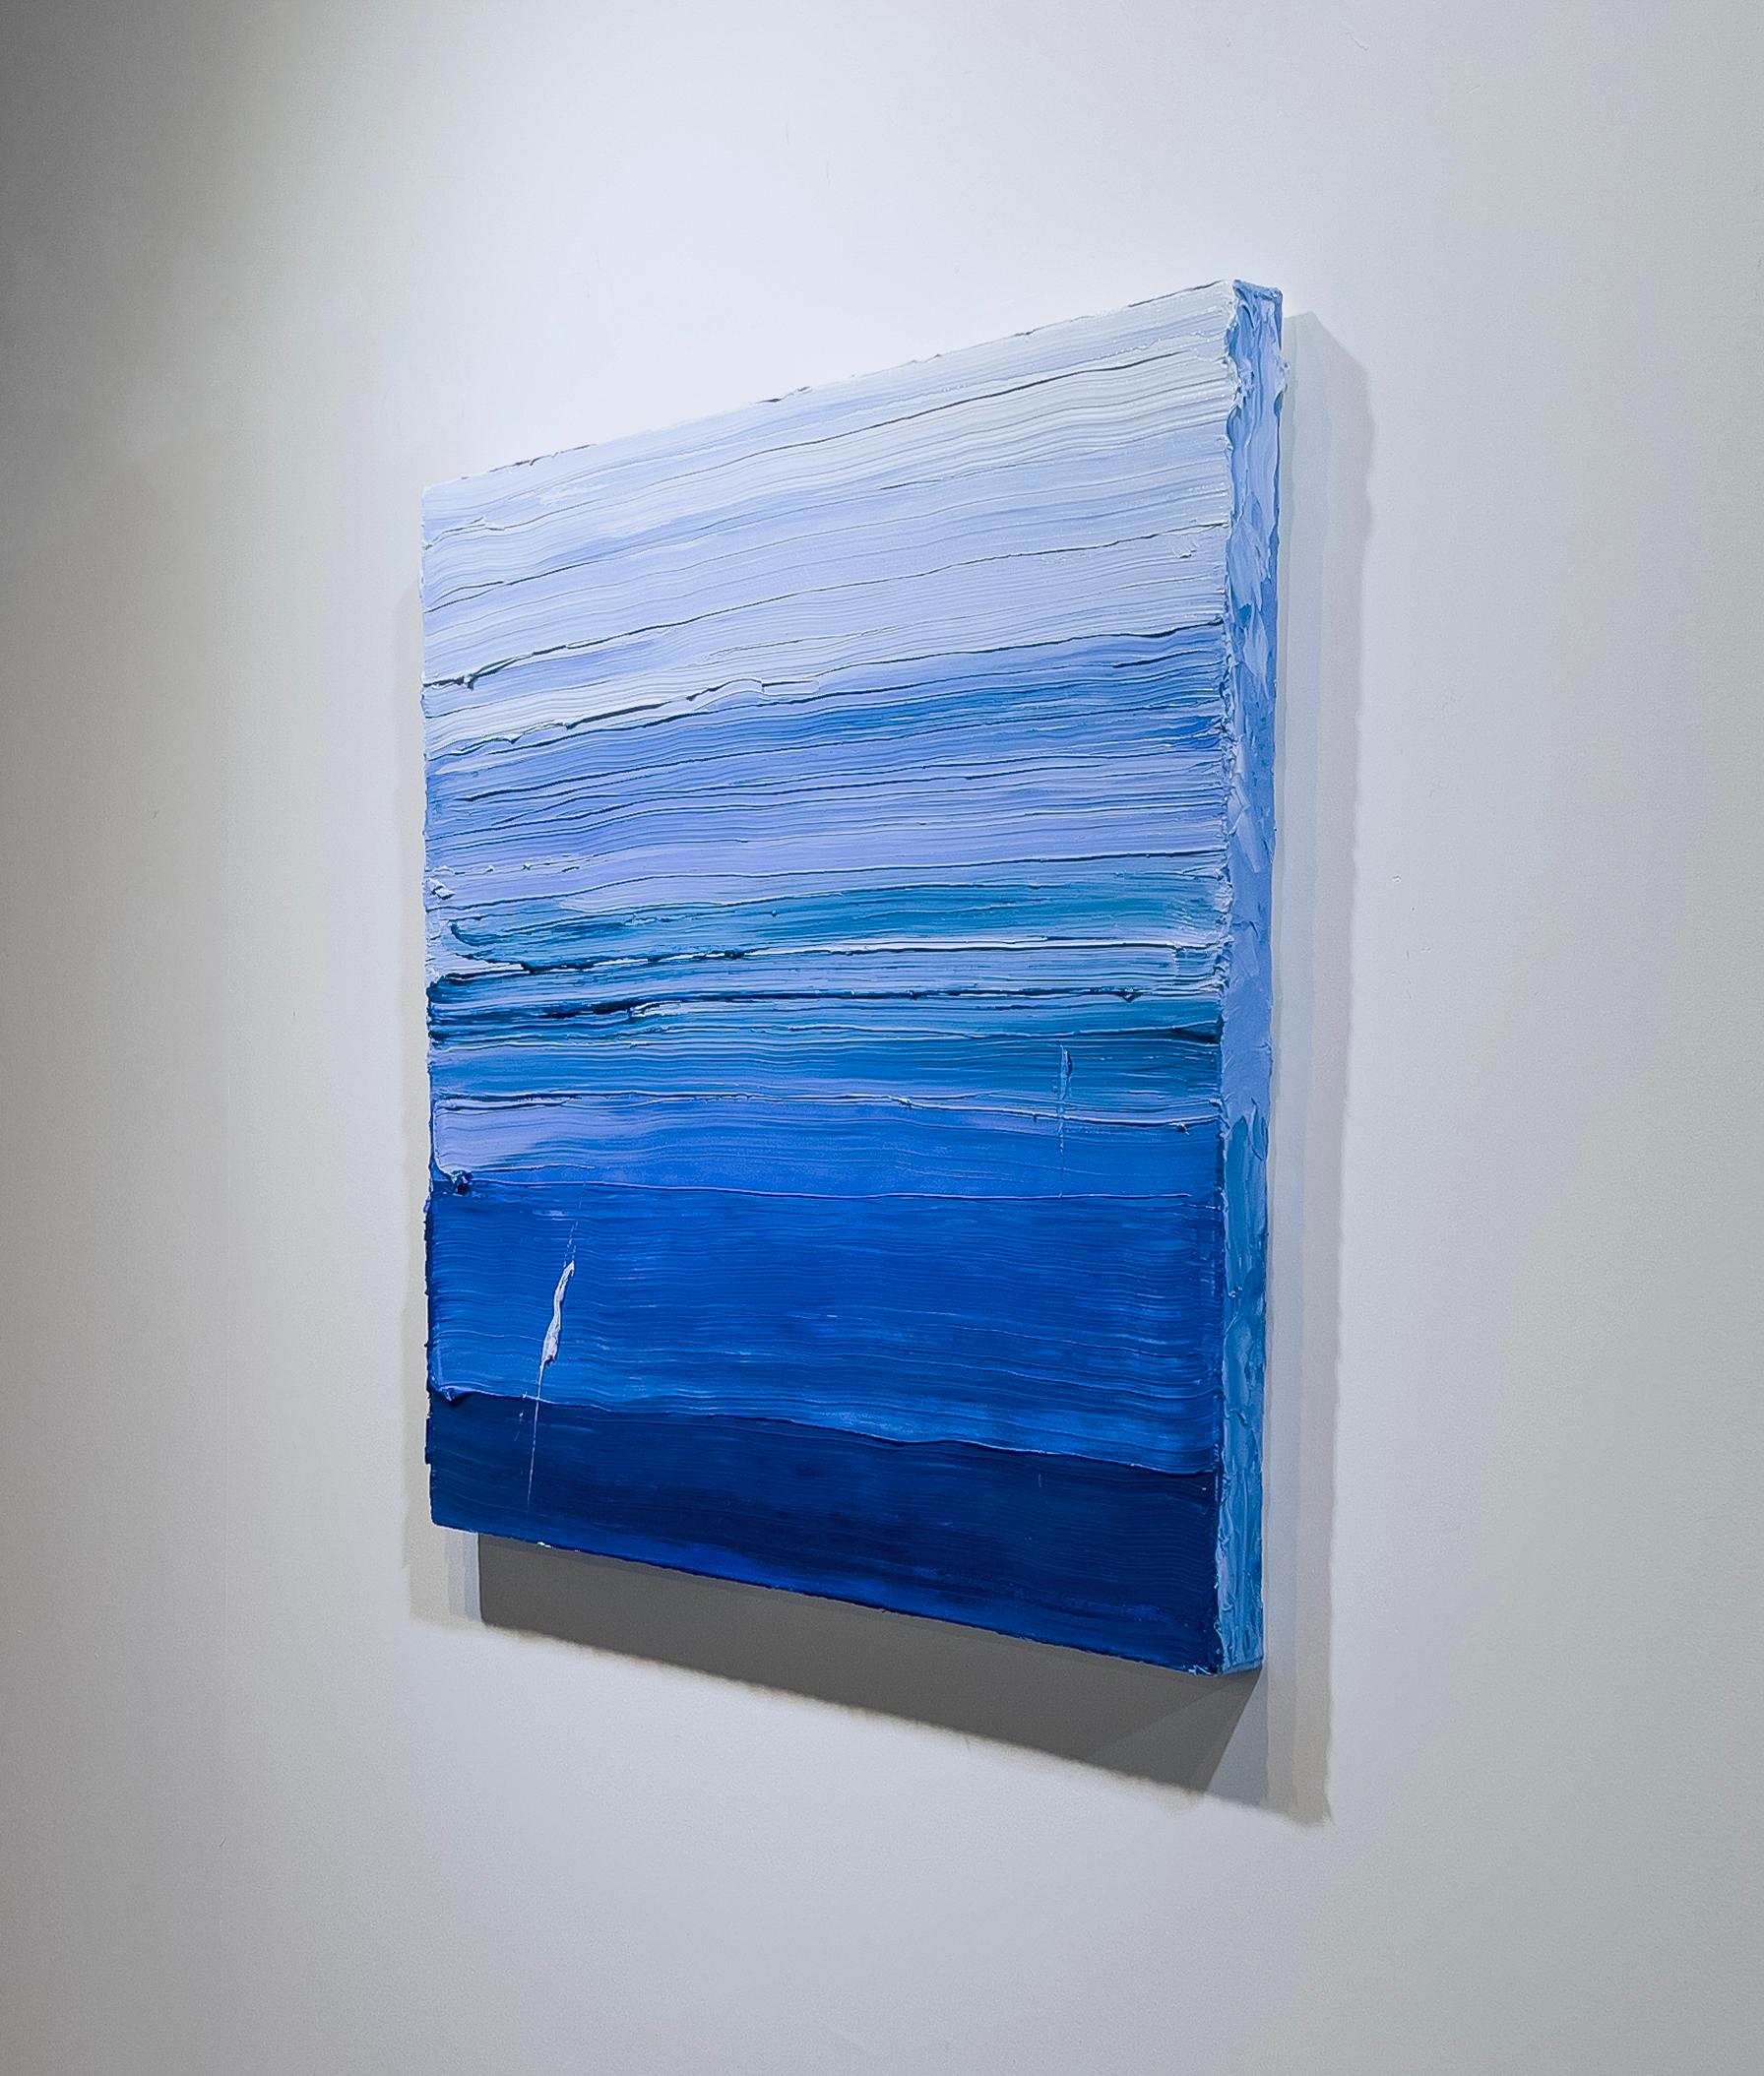 Cette peinture abstraite contemporaine de Teodora Guererra présente une palette de bleu vif. L'artiste applique d'épaisses couches de peinture à l'huile par larges coups de pinceau pour créer une peinture très texturée qui part d'un bleu profond au